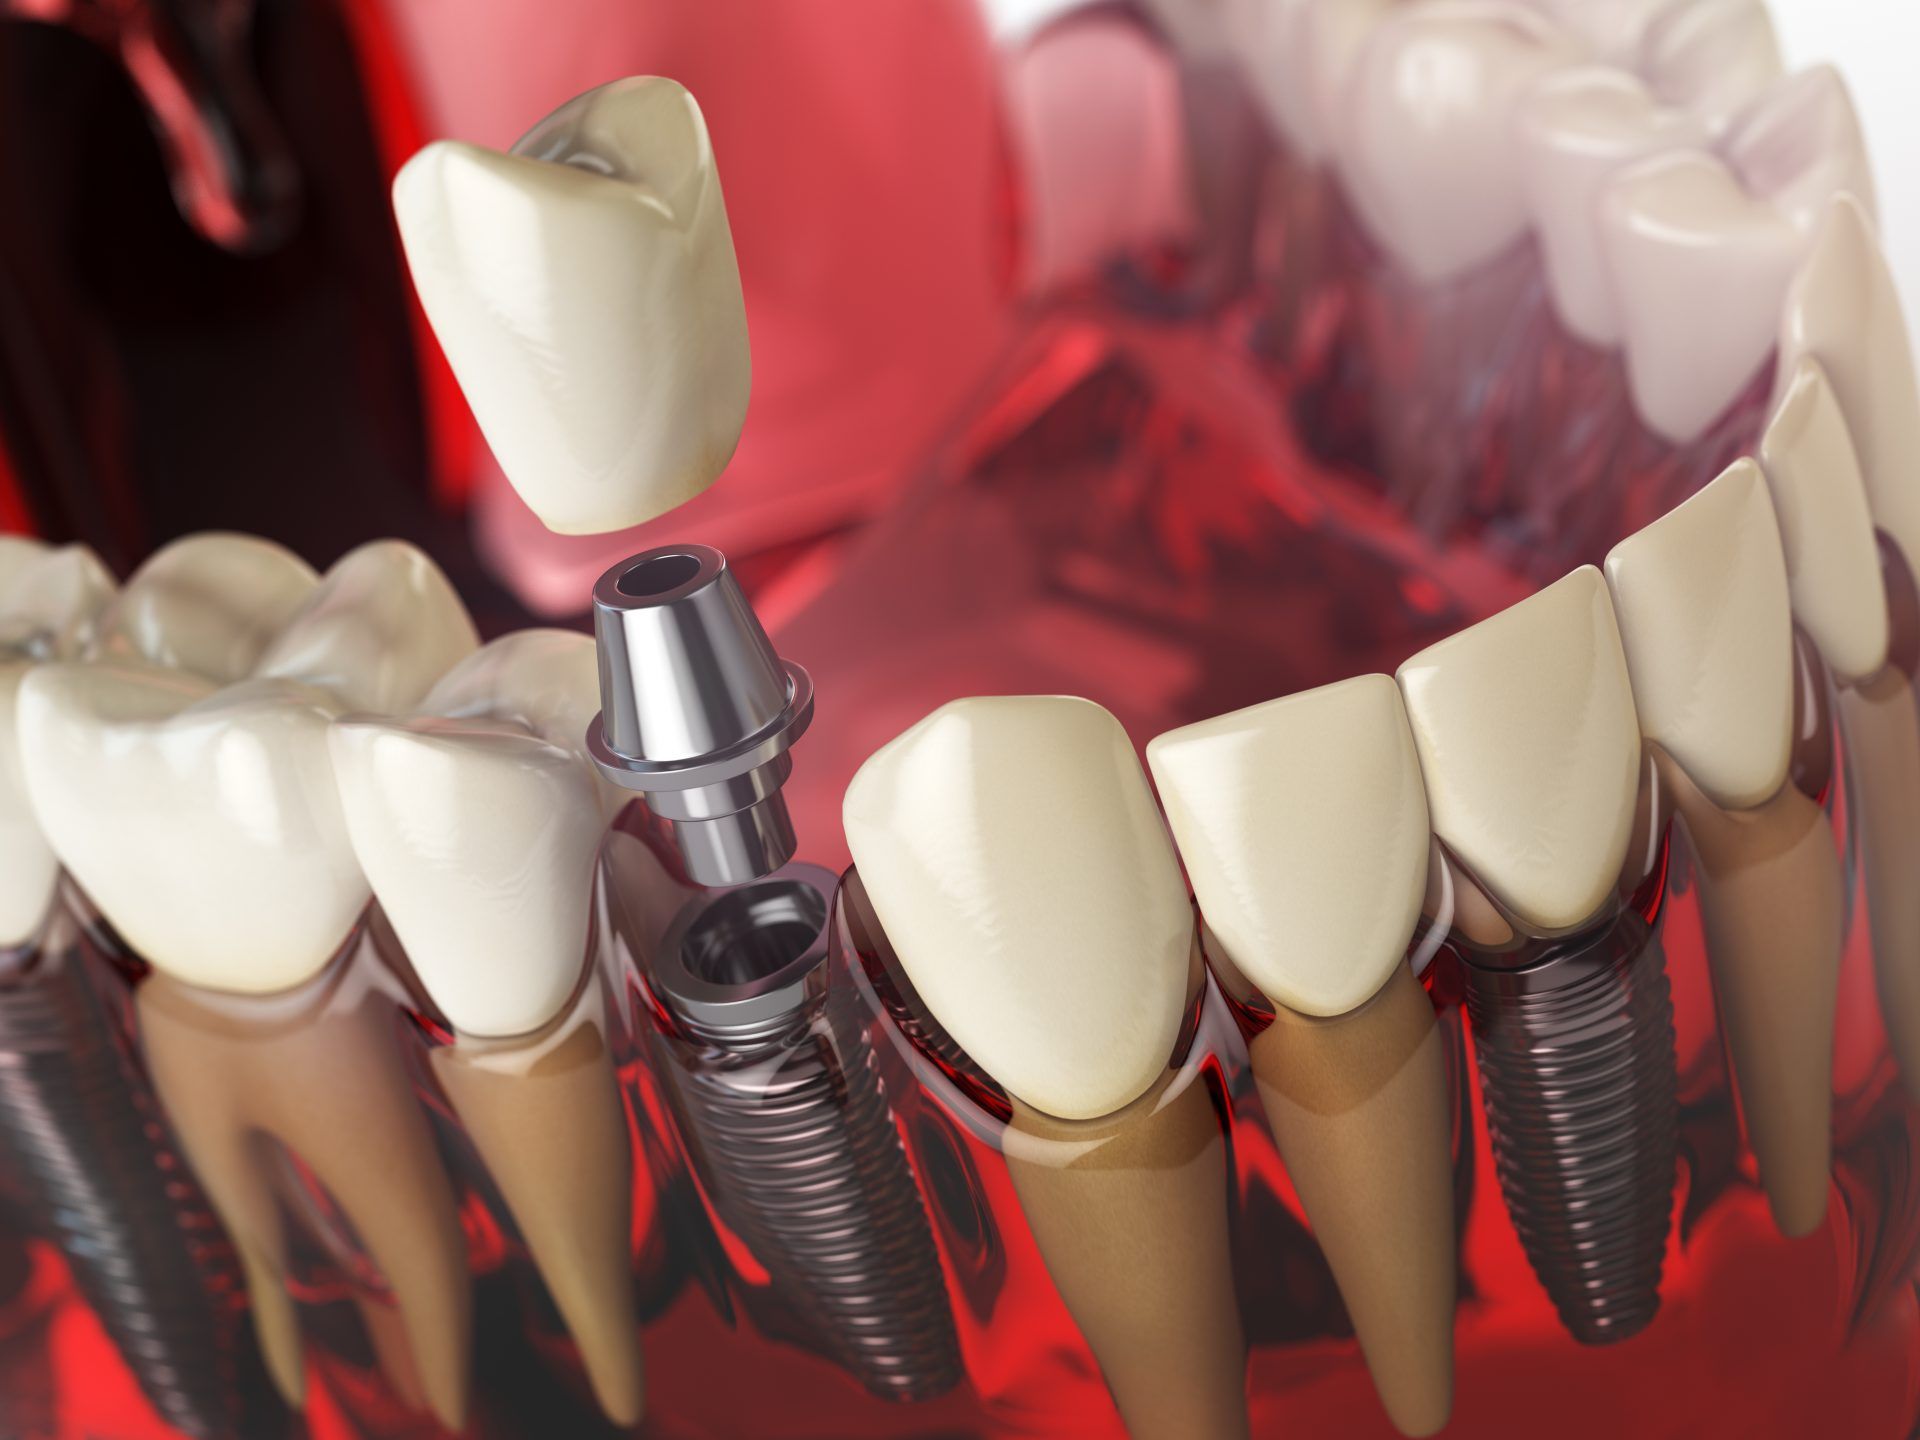 مزایای کاشت ایمپلنت دندان چیست؟